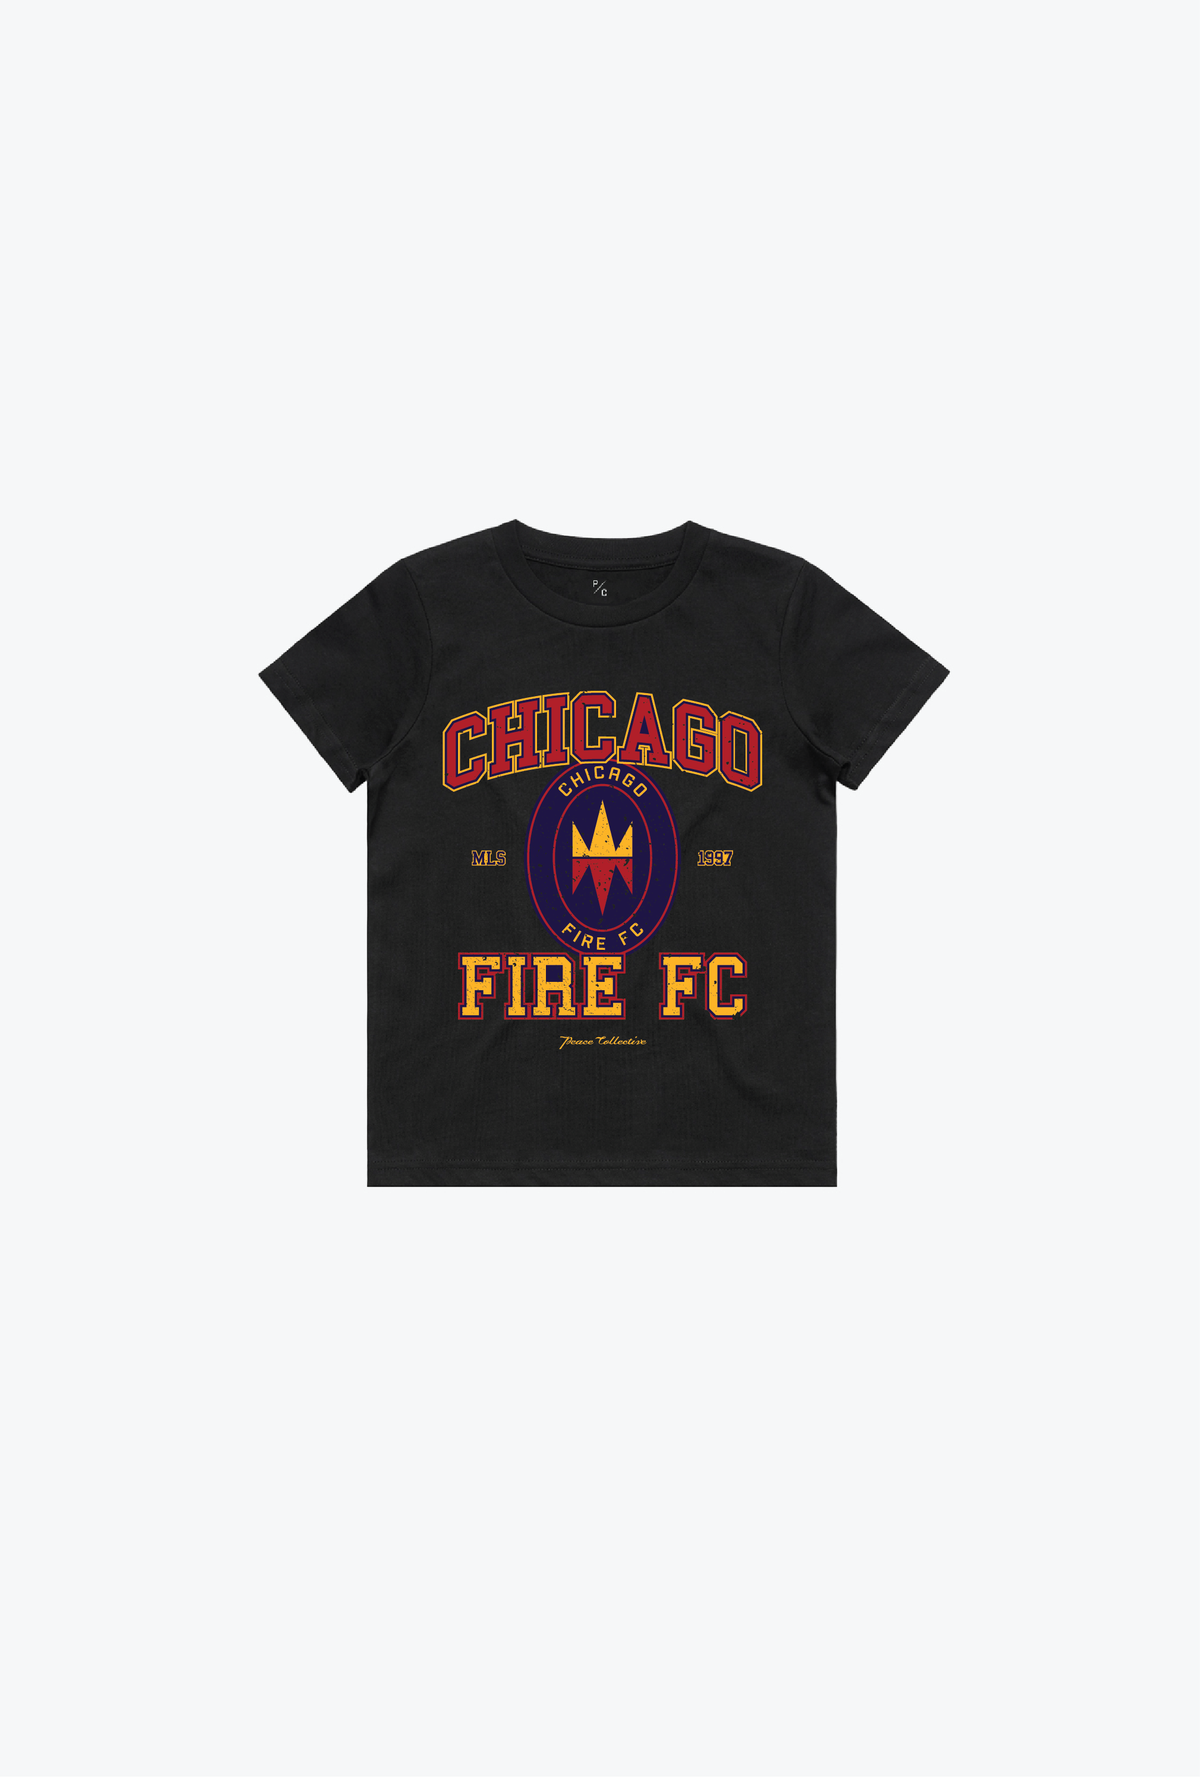 Chicago Fire FC Vintage Washed Kids T-Shirt - Black